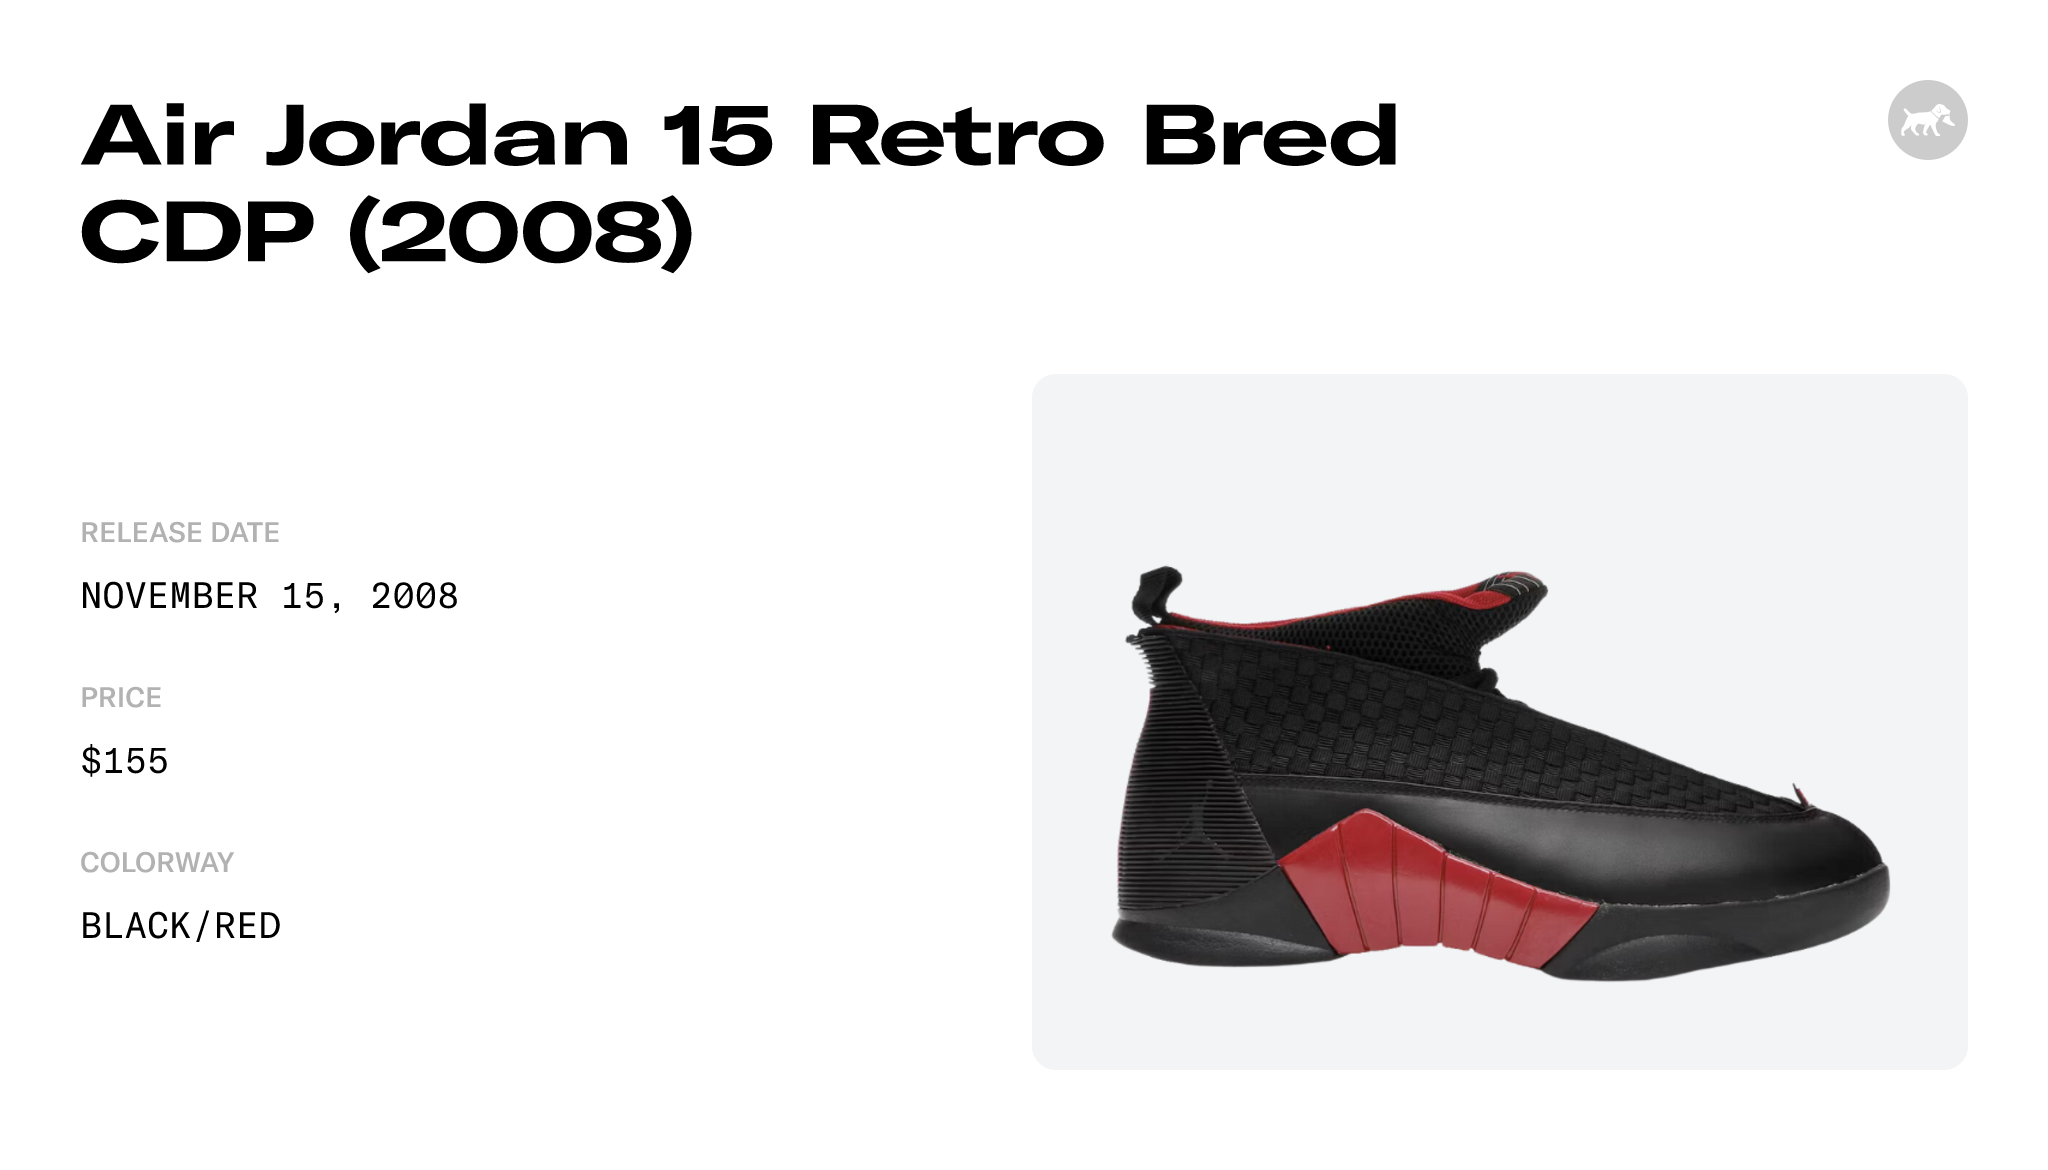 Air Jordan 15 Retro Bred CDP (2008) - 317111-062 Raffles and Release Date